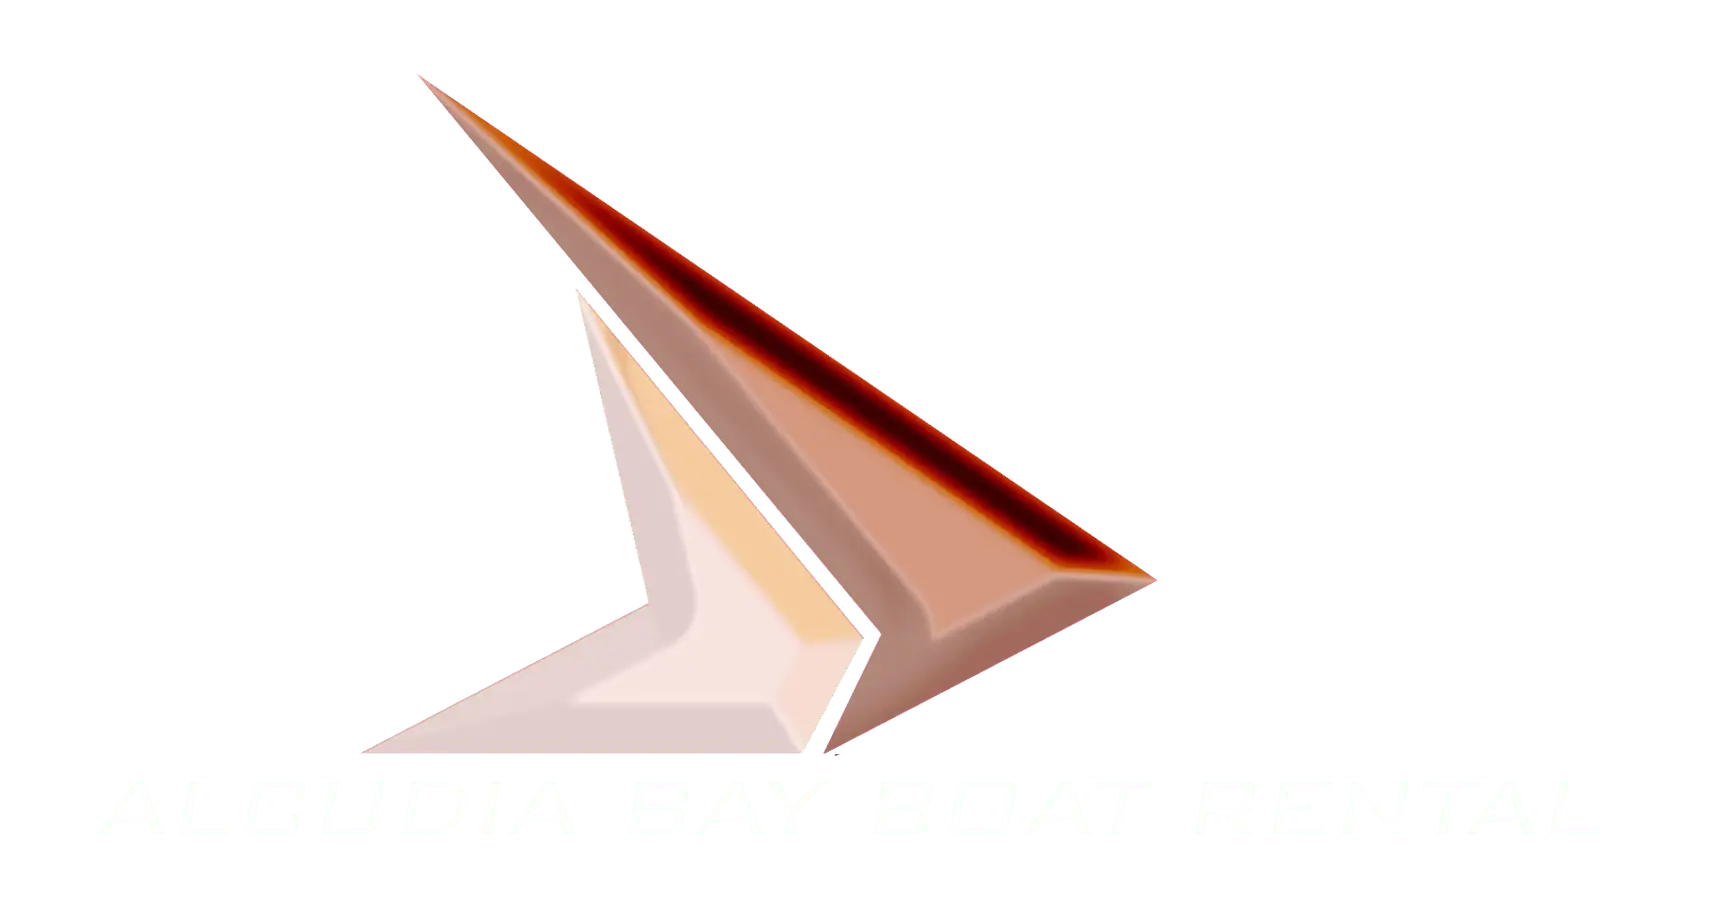 mega yacht mieten mallorca